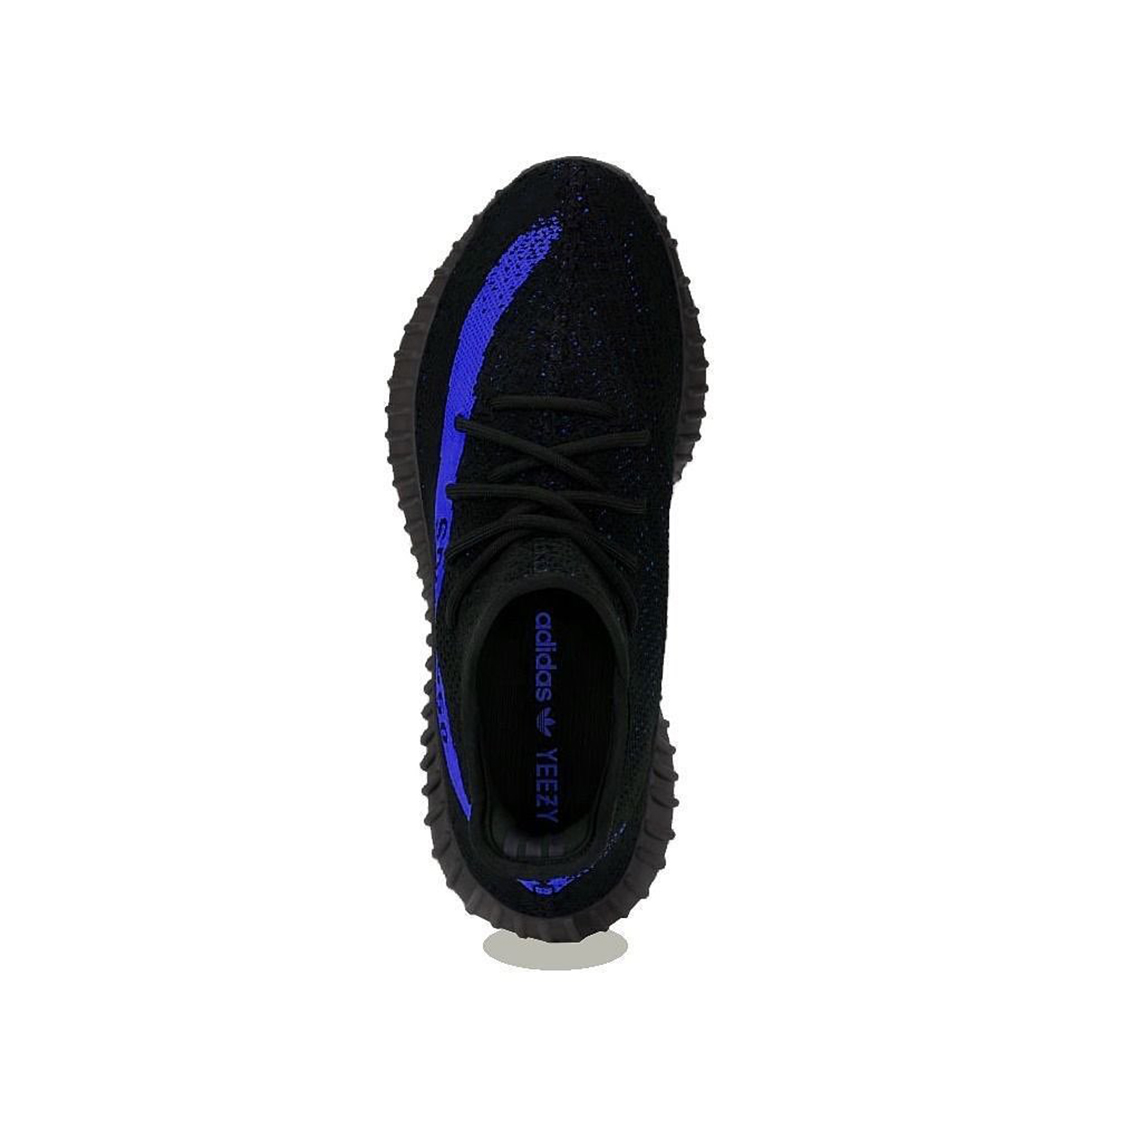 Adidas Yeezy Boost 350 V2 Dazzling Blue 2